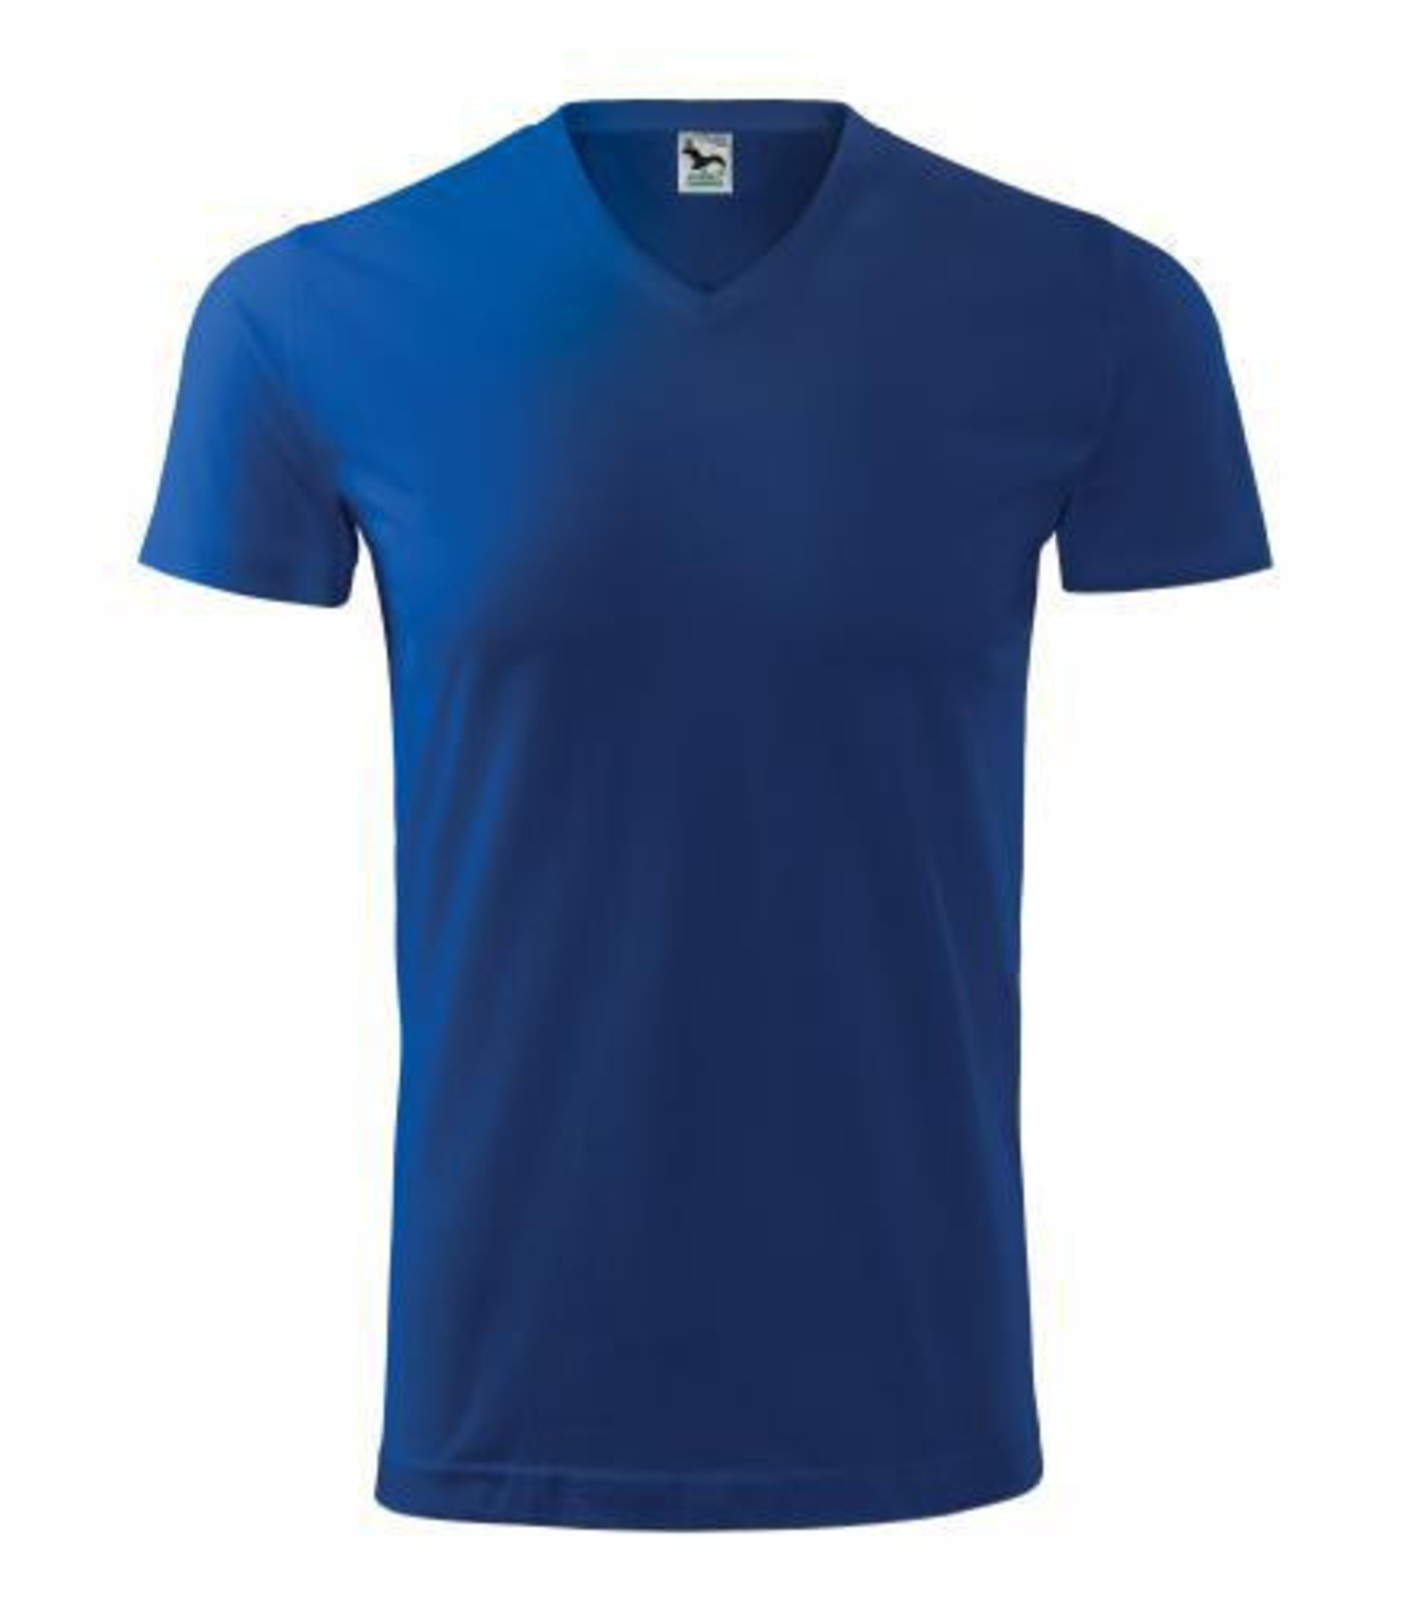 Unisex tričko s V výstrihom Adler Heavy V-Neck 111 - veľkosť: S, farba: kráľovská modrá